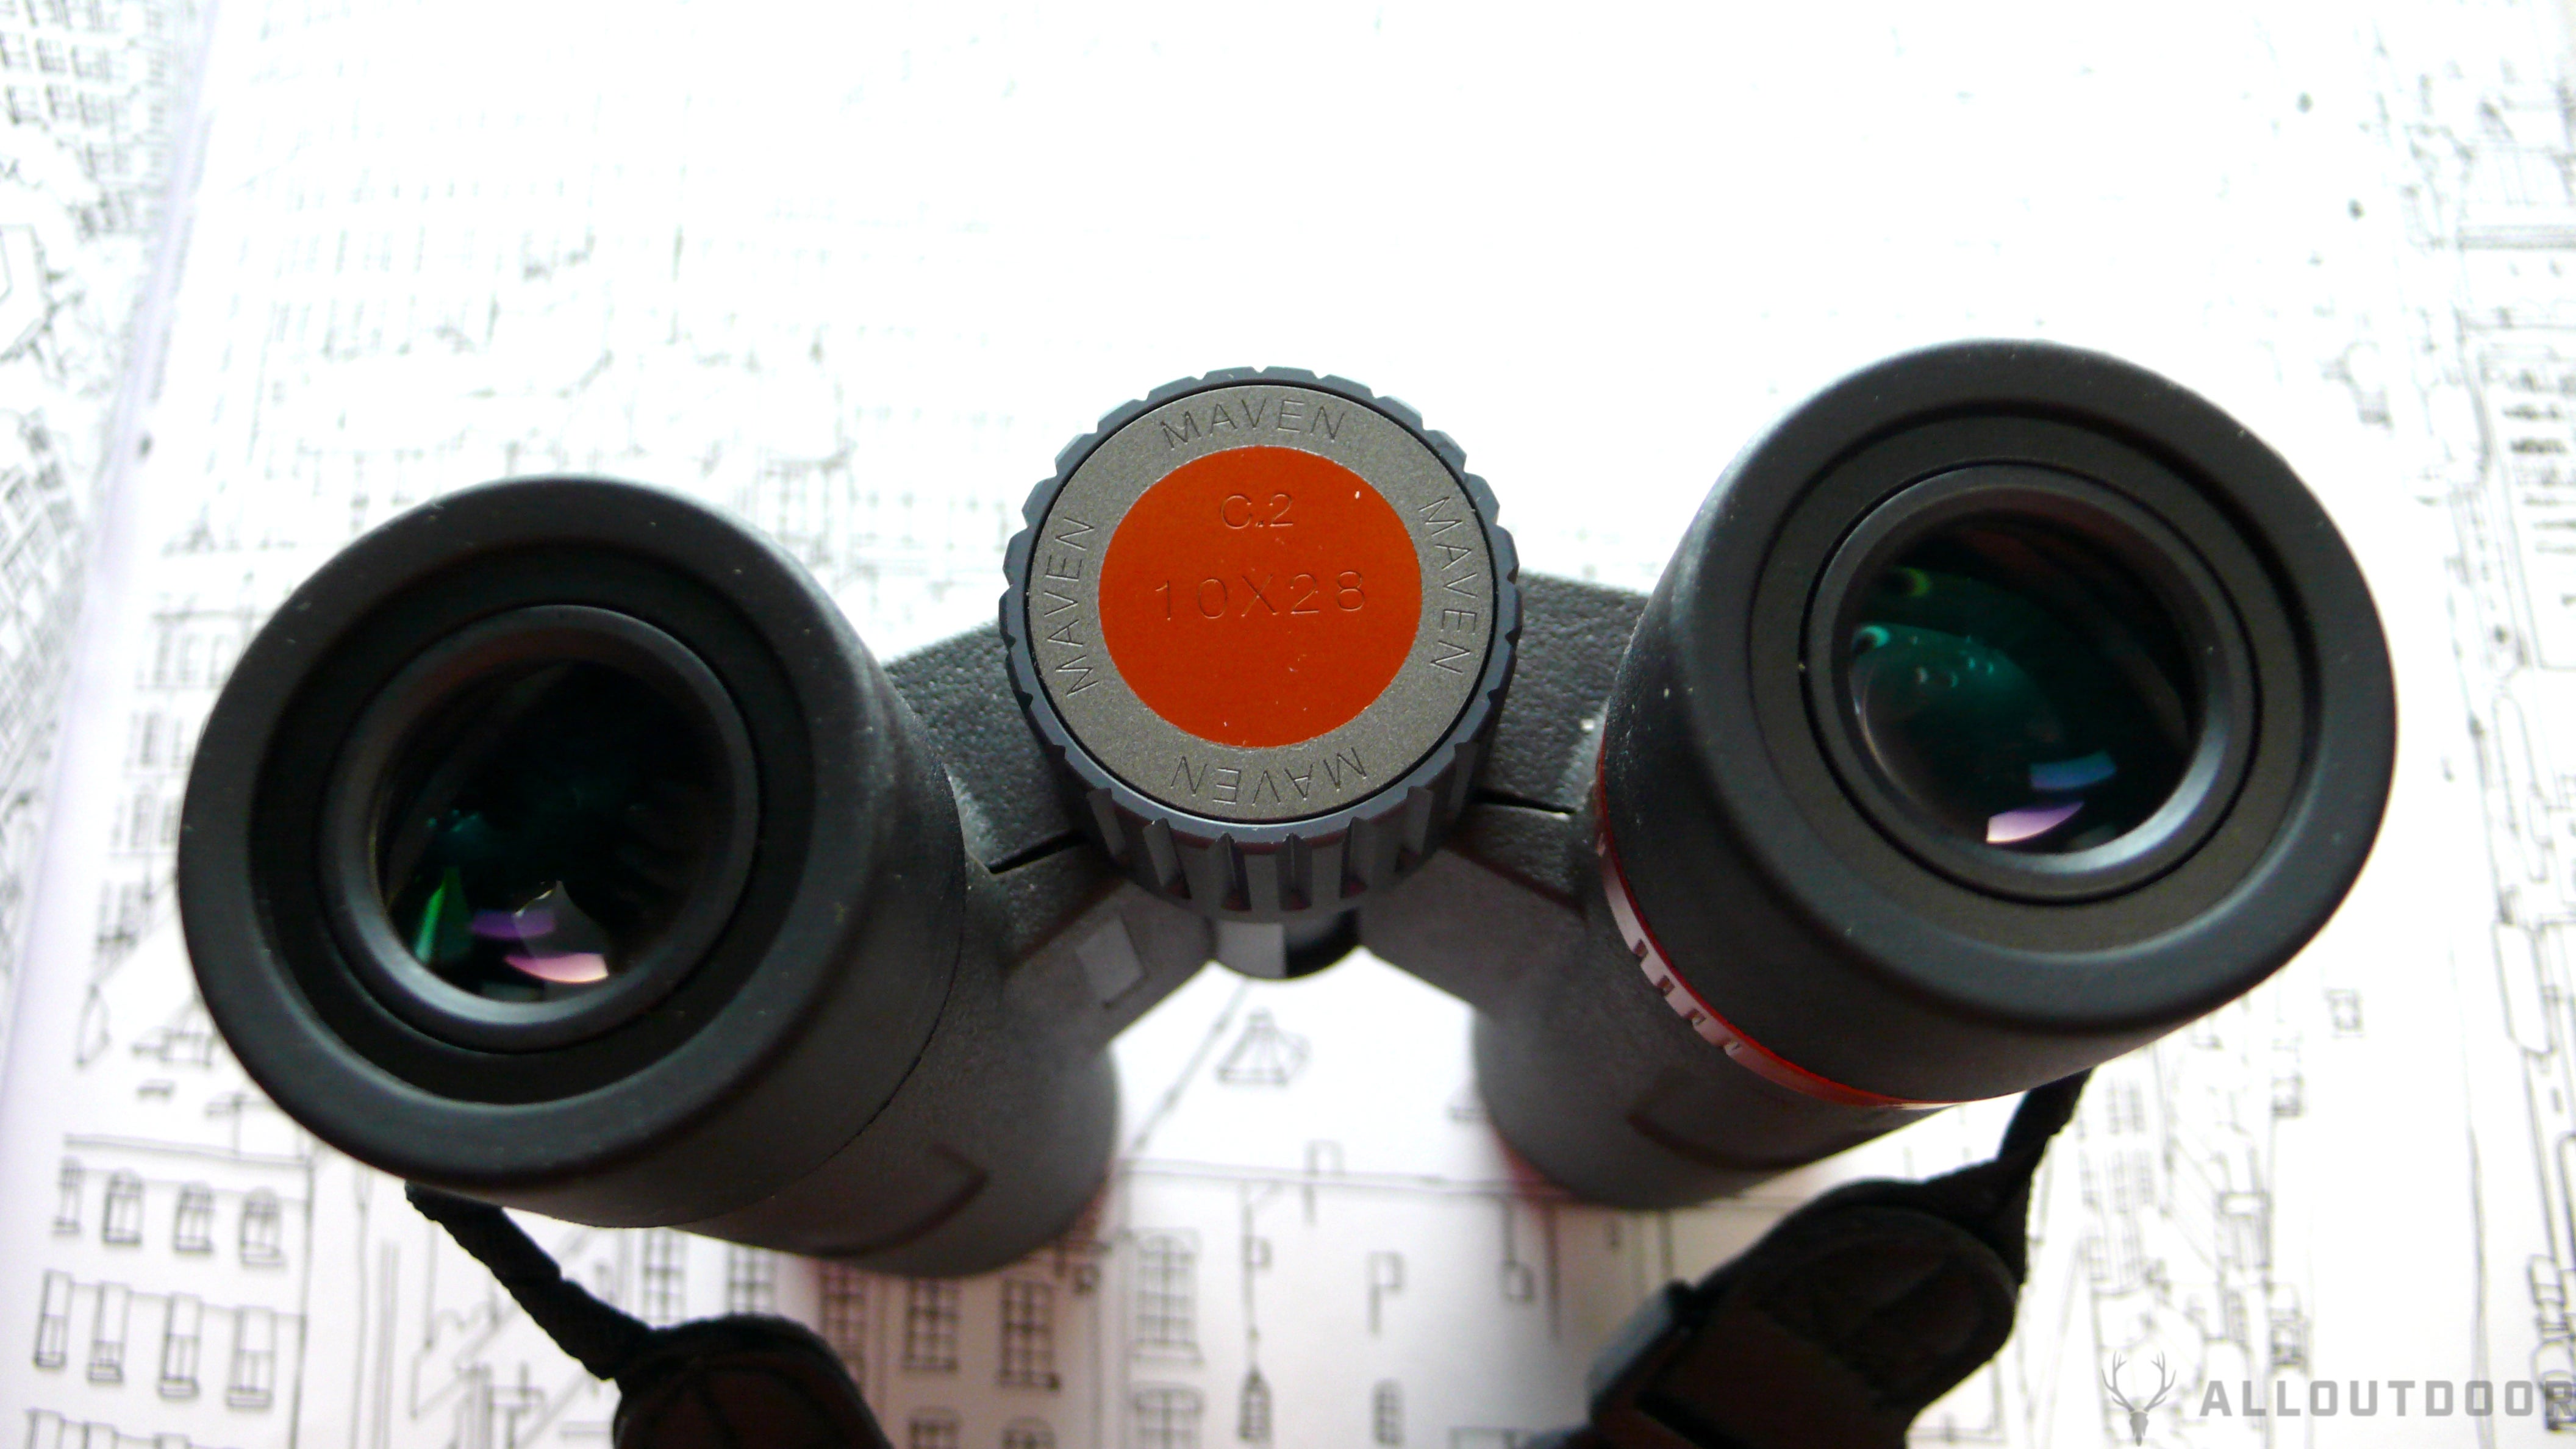 AllOutdoor Review: Maven C.2 Binocular In 10x28mm